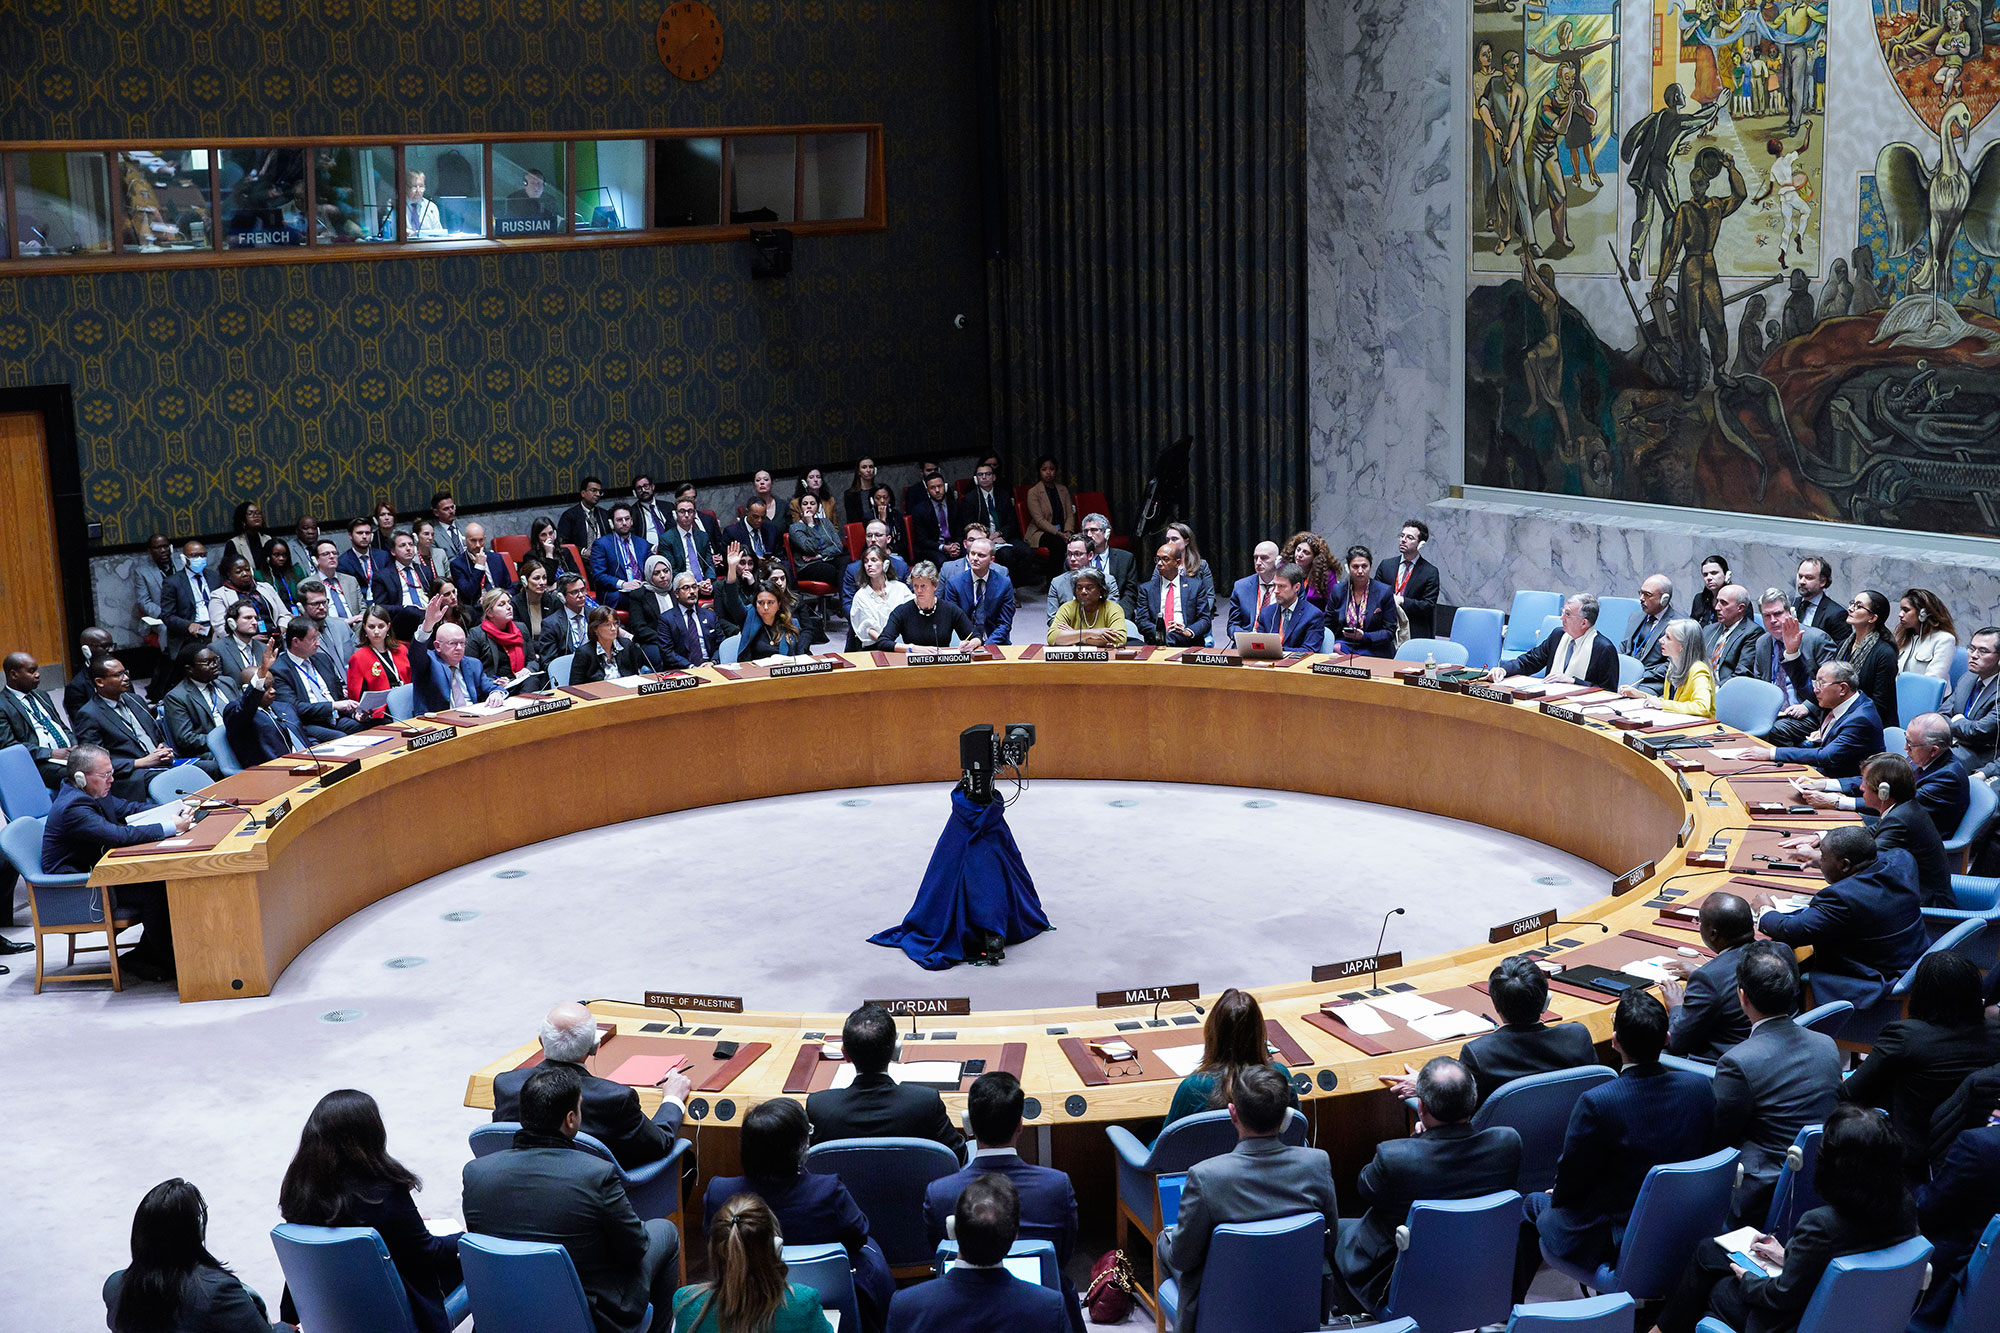 مجلس الأمن الدولي يفشل في تبني مشروع قرار روسي يدعو إلى وقف إطلاق نار لدواع إنسانية في غزة